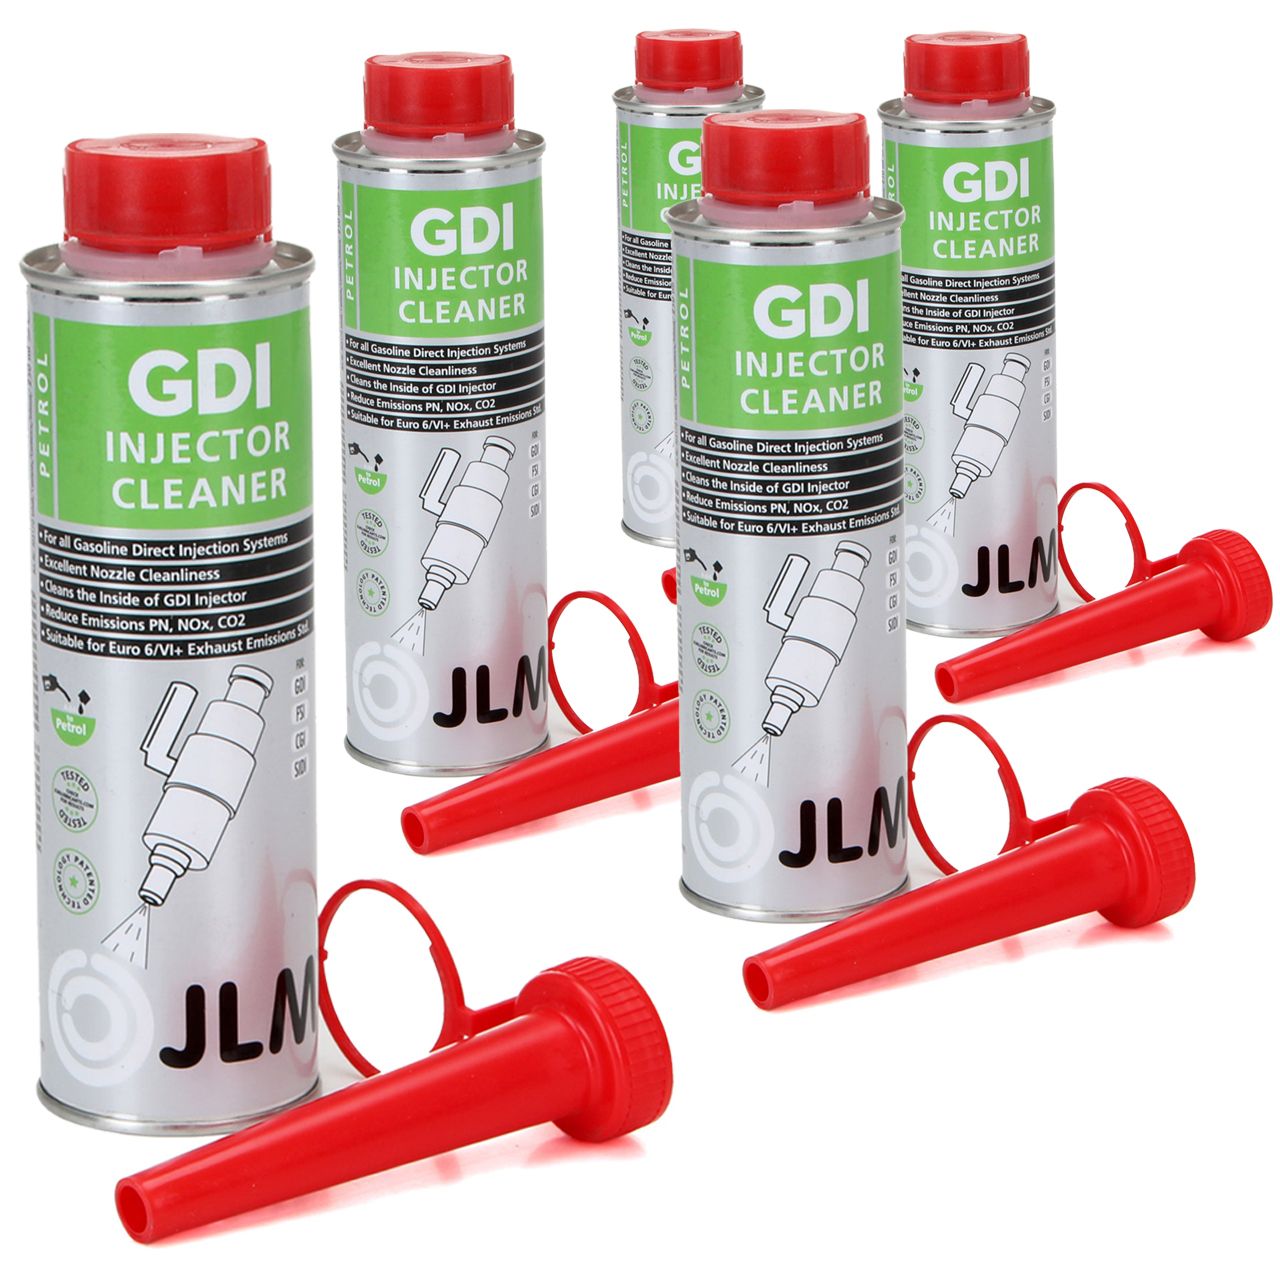 JLM J03170 GDI Injector Cleaner Injektoren Reiniger